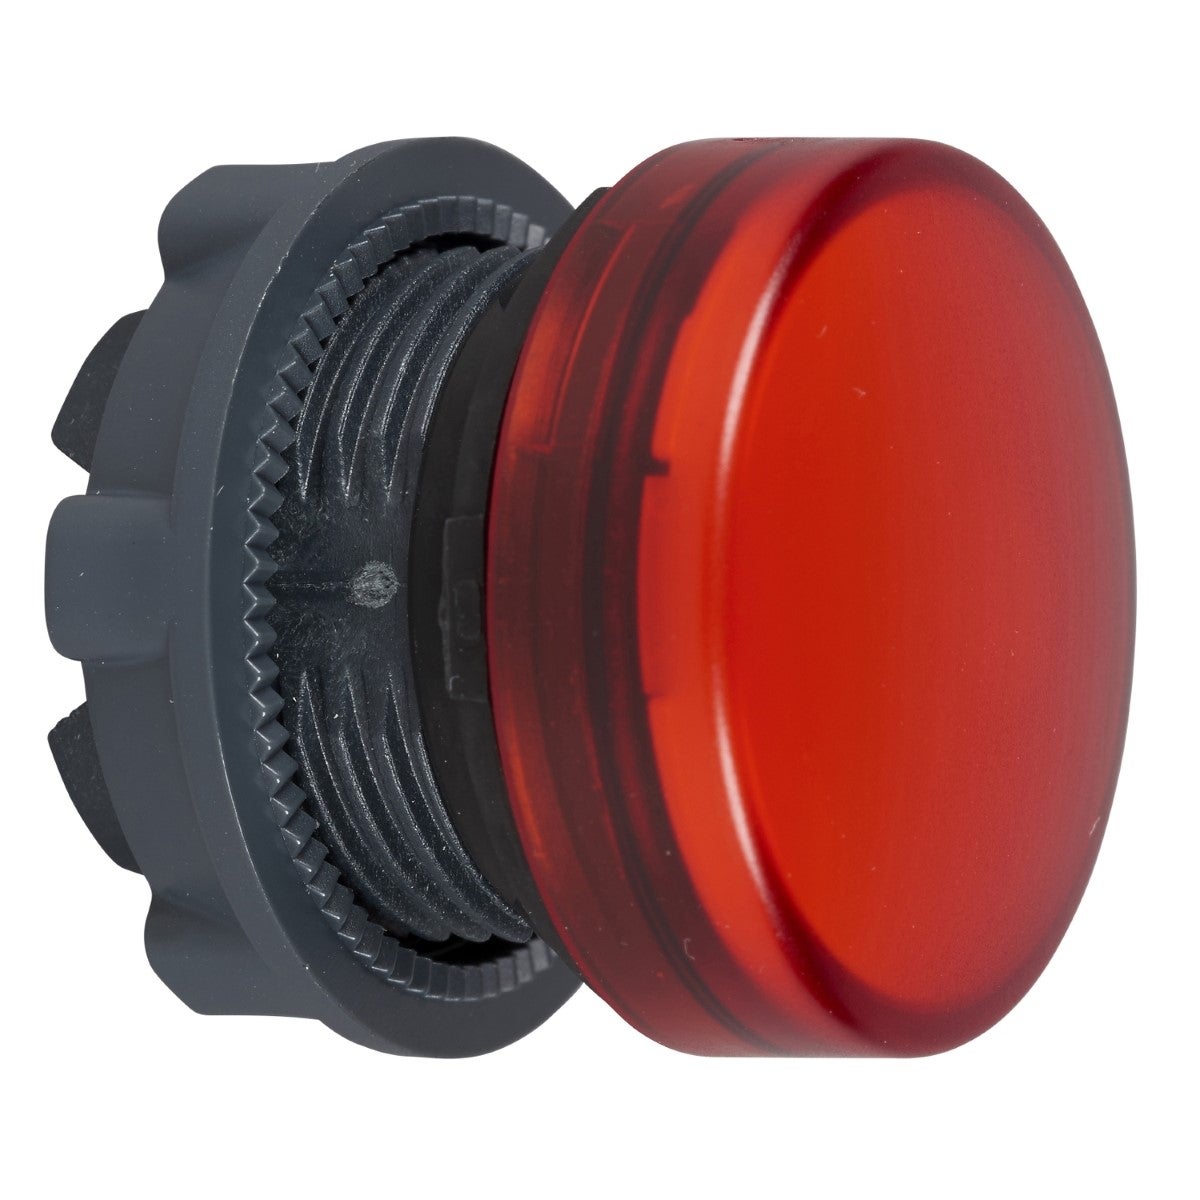 red pilot light head Ã˜22 plain lens for integral LED